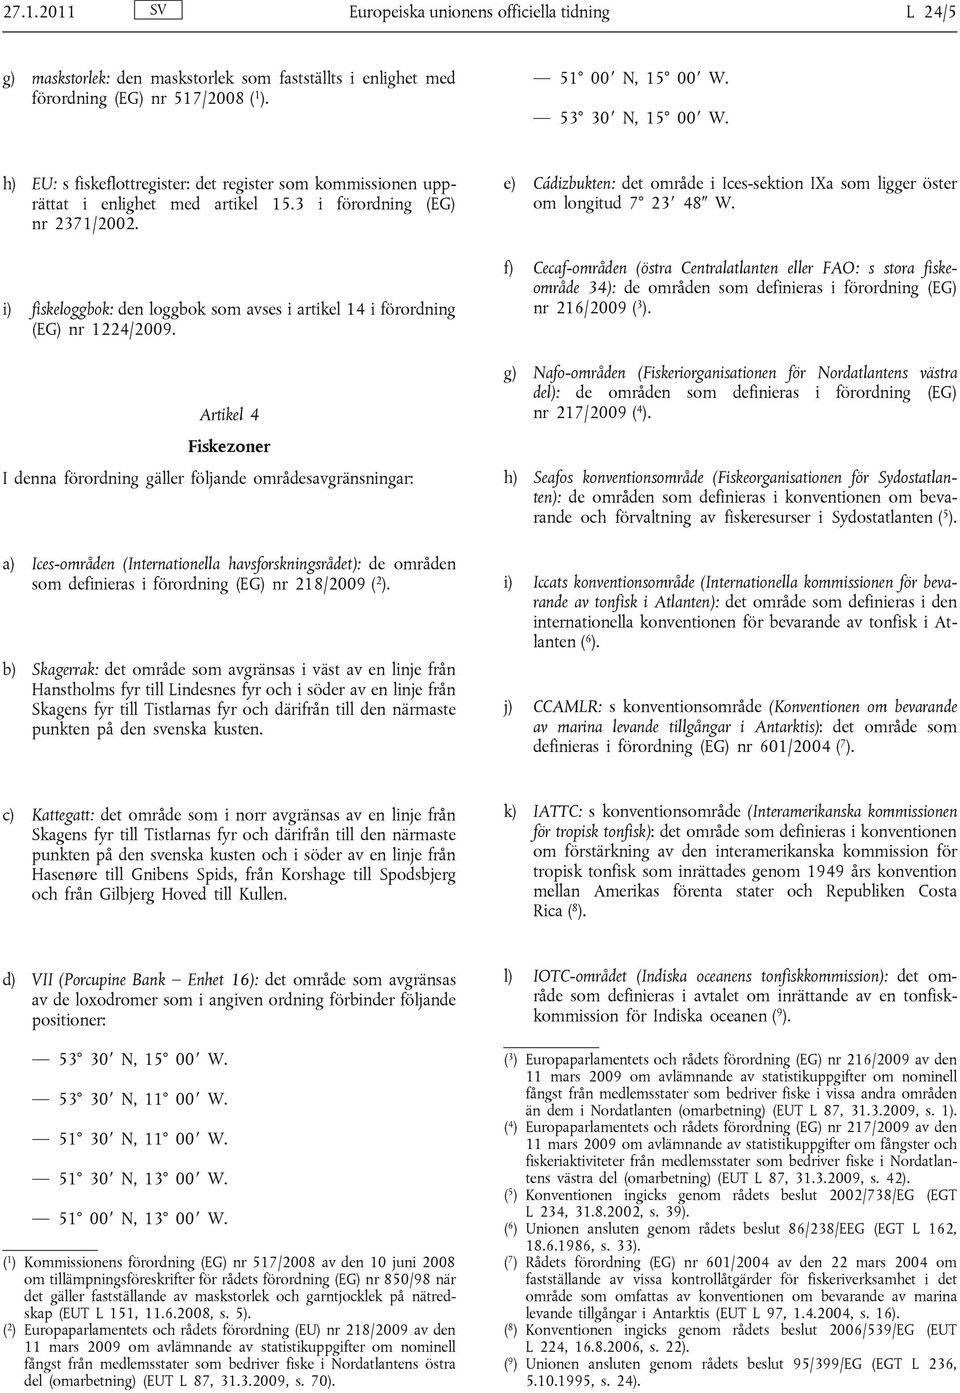 i) fiskeloggbok: den loggbok som avses i artikel 14 i förordning (EG) nr 1224/2009.